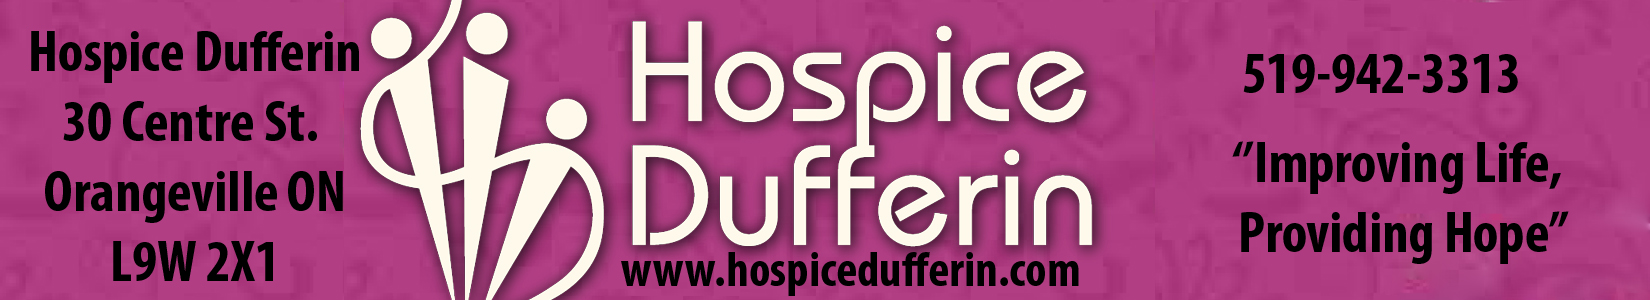 HOSPICE DUFFERIN logo